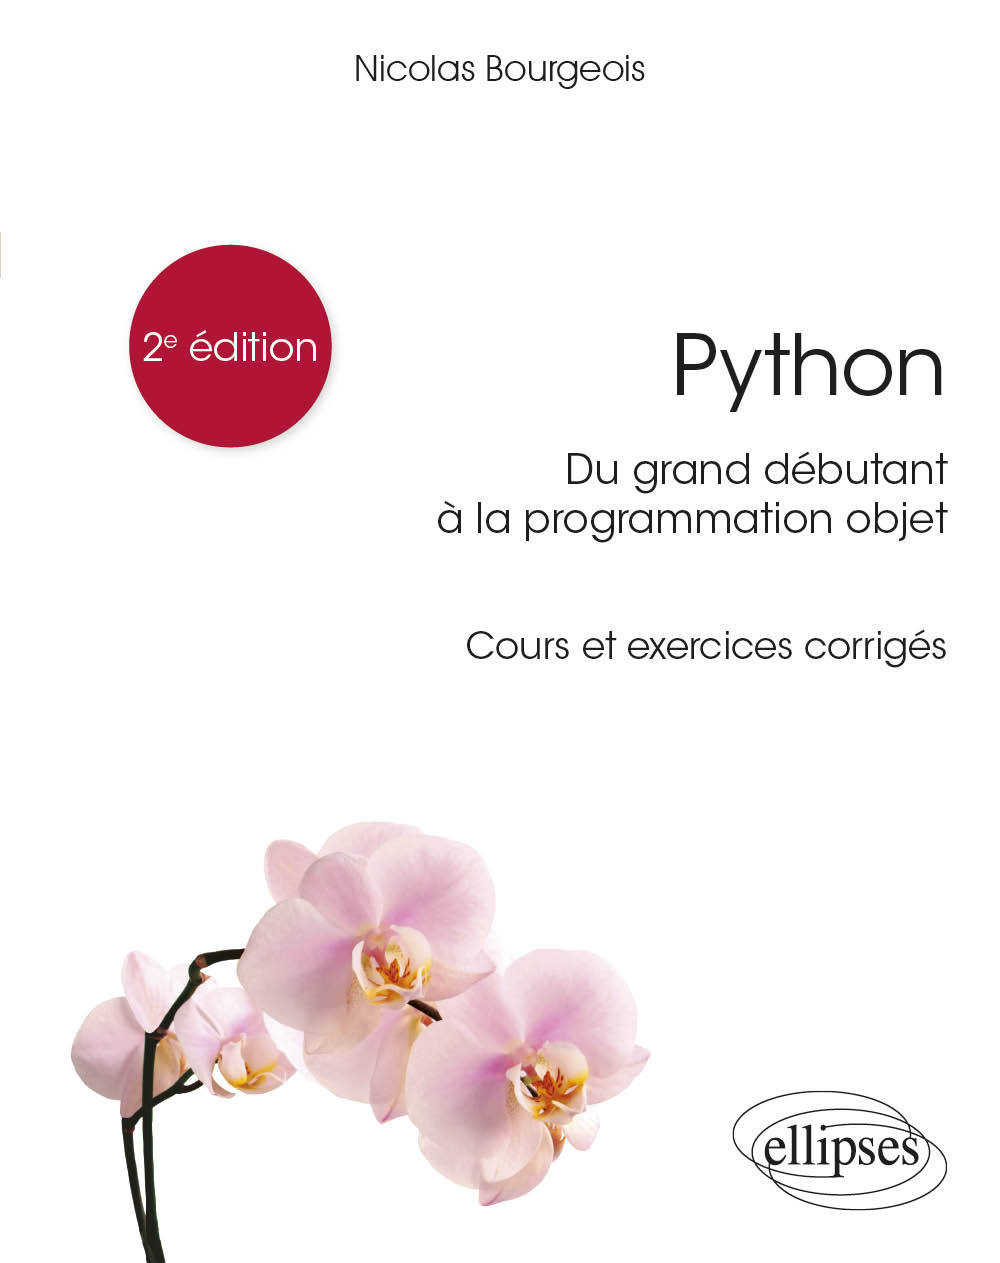 Книга Python, du grand débutant à la programmation objet - Cours et exercices corrigés - 2e édition Bourgeois